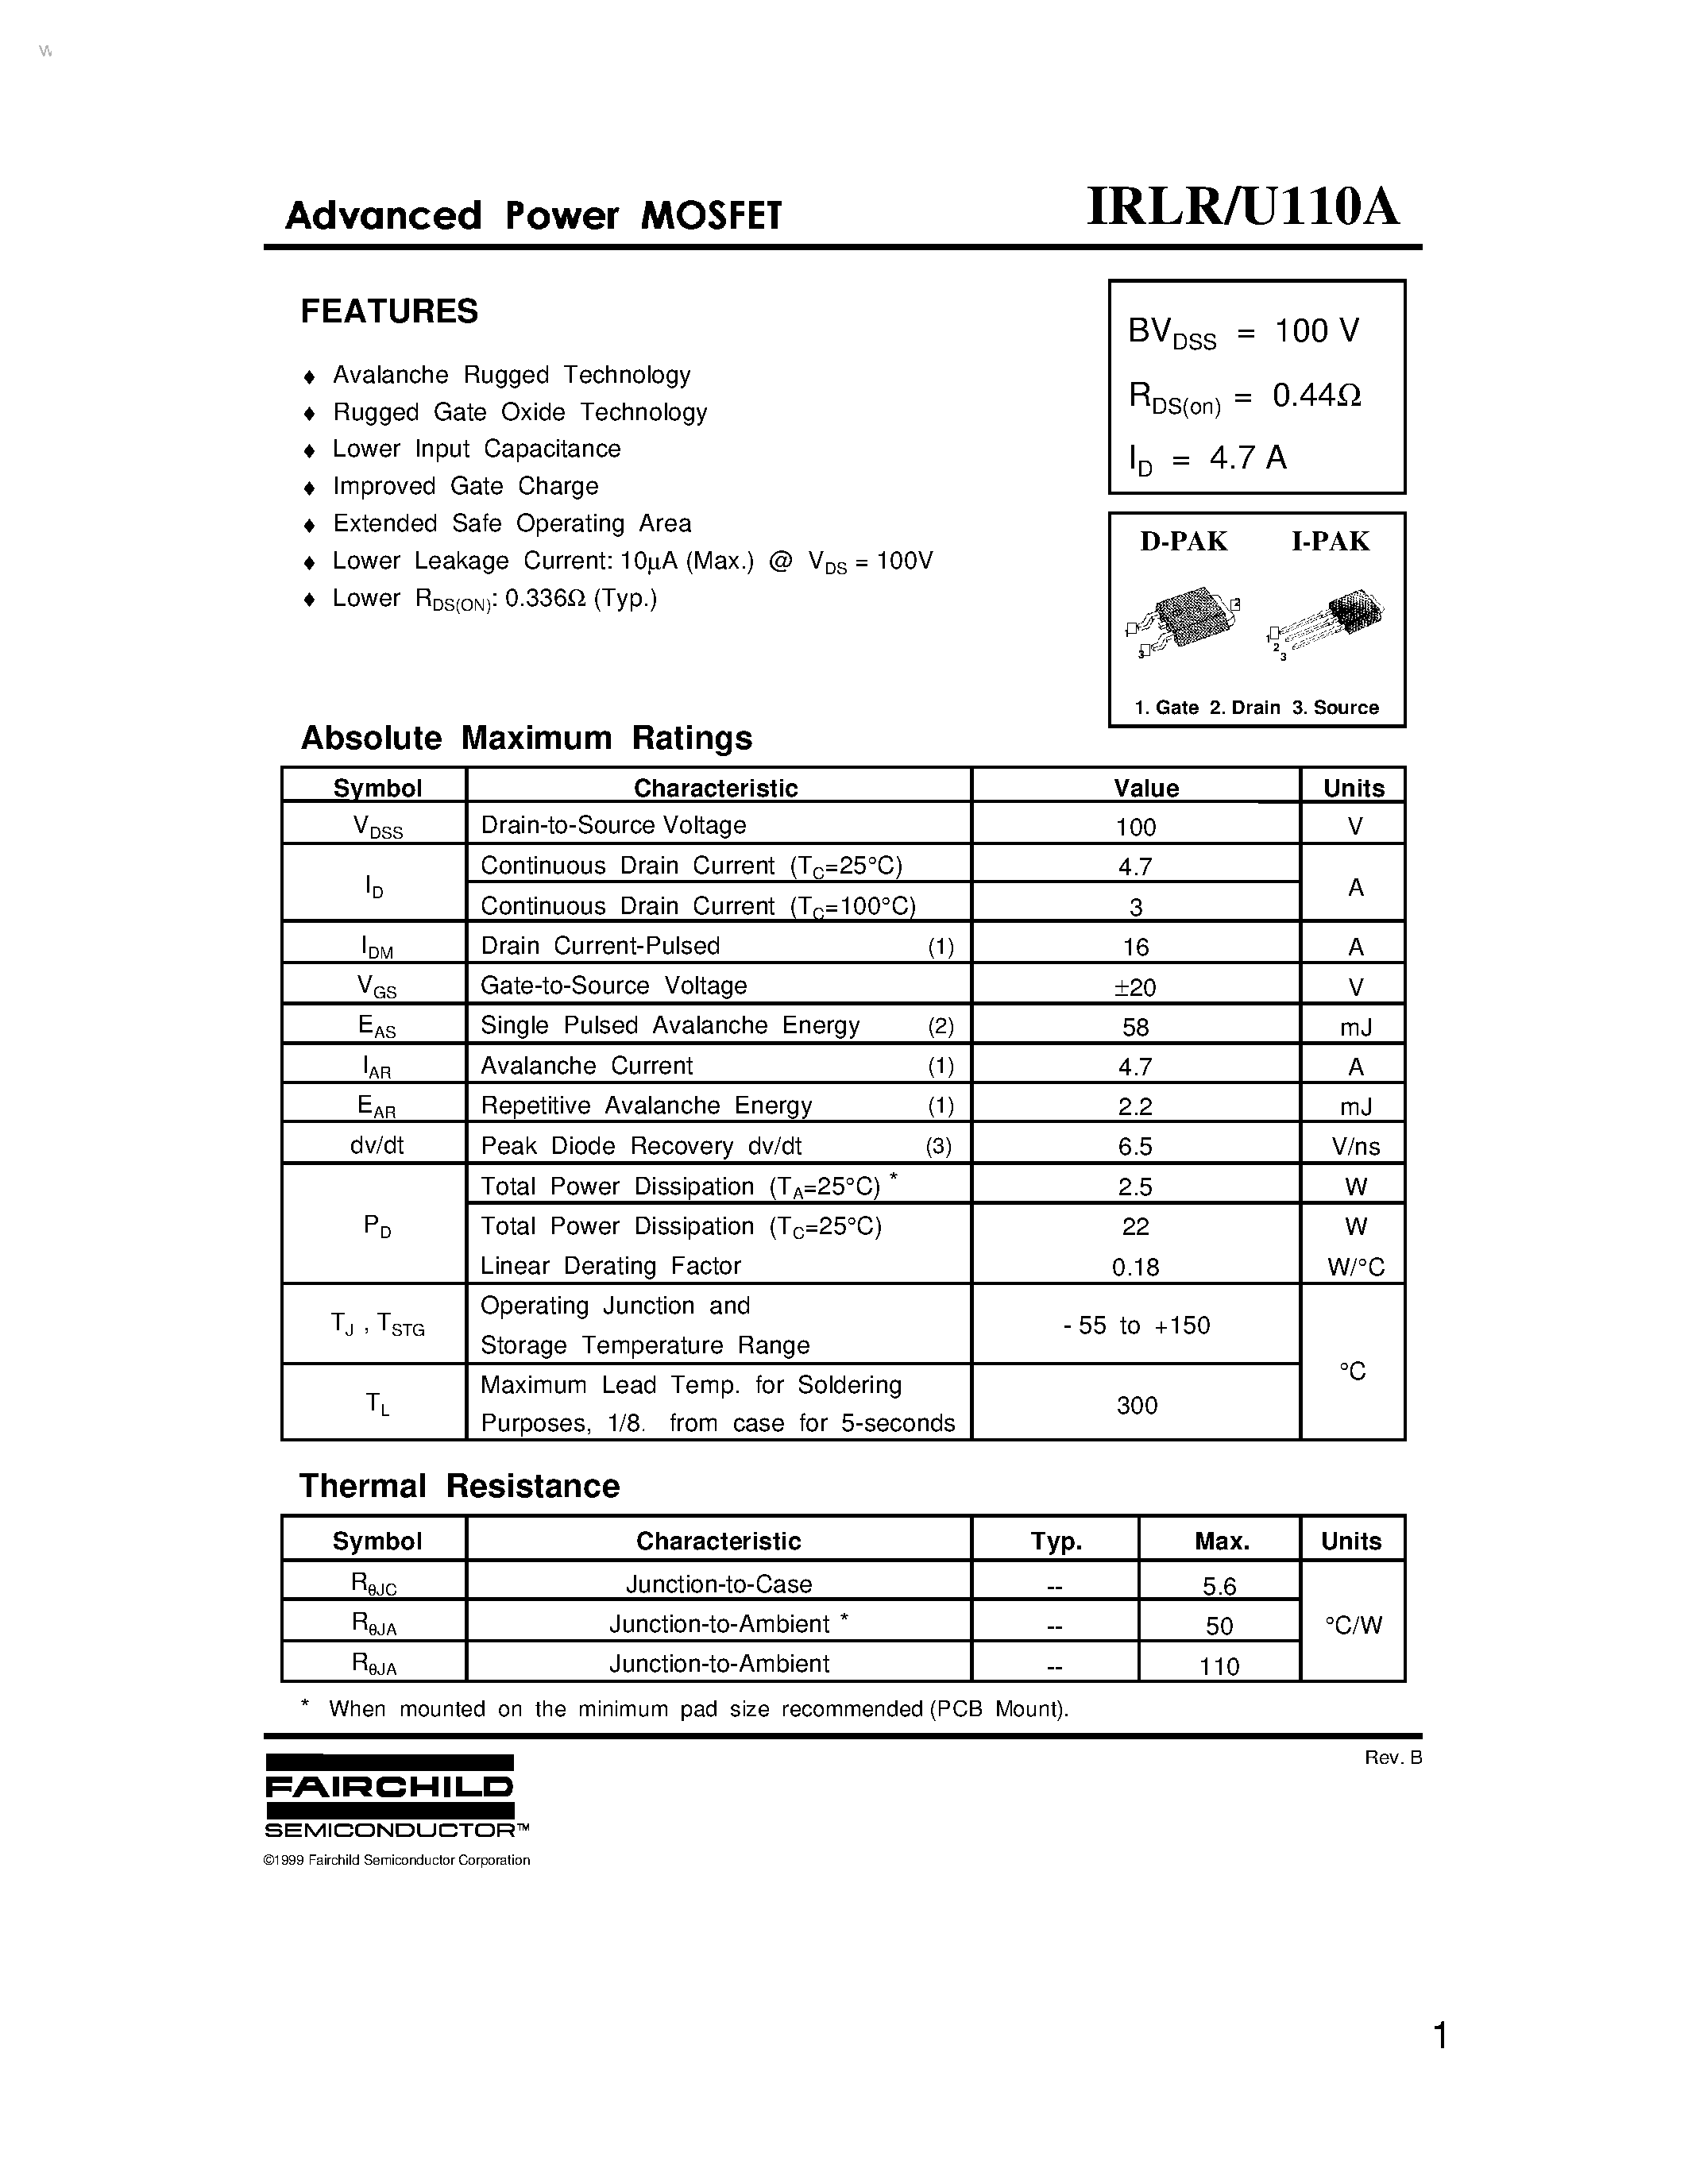 Datasheet IRLR110A - (IRLR110A / IRLU110A) Advanced Power MOSFET page 1